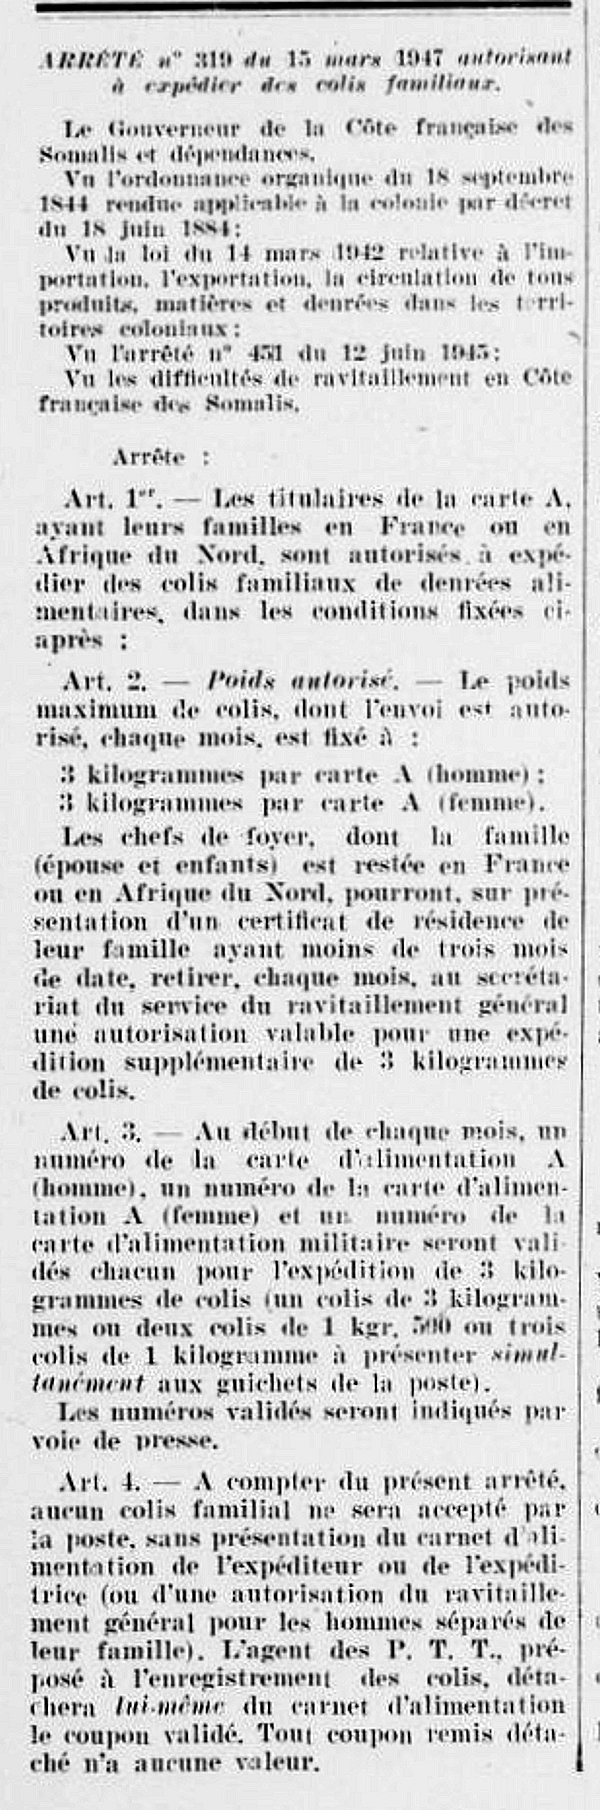 Autorisation d'export des colis familiaux mars 1947 Djibouti